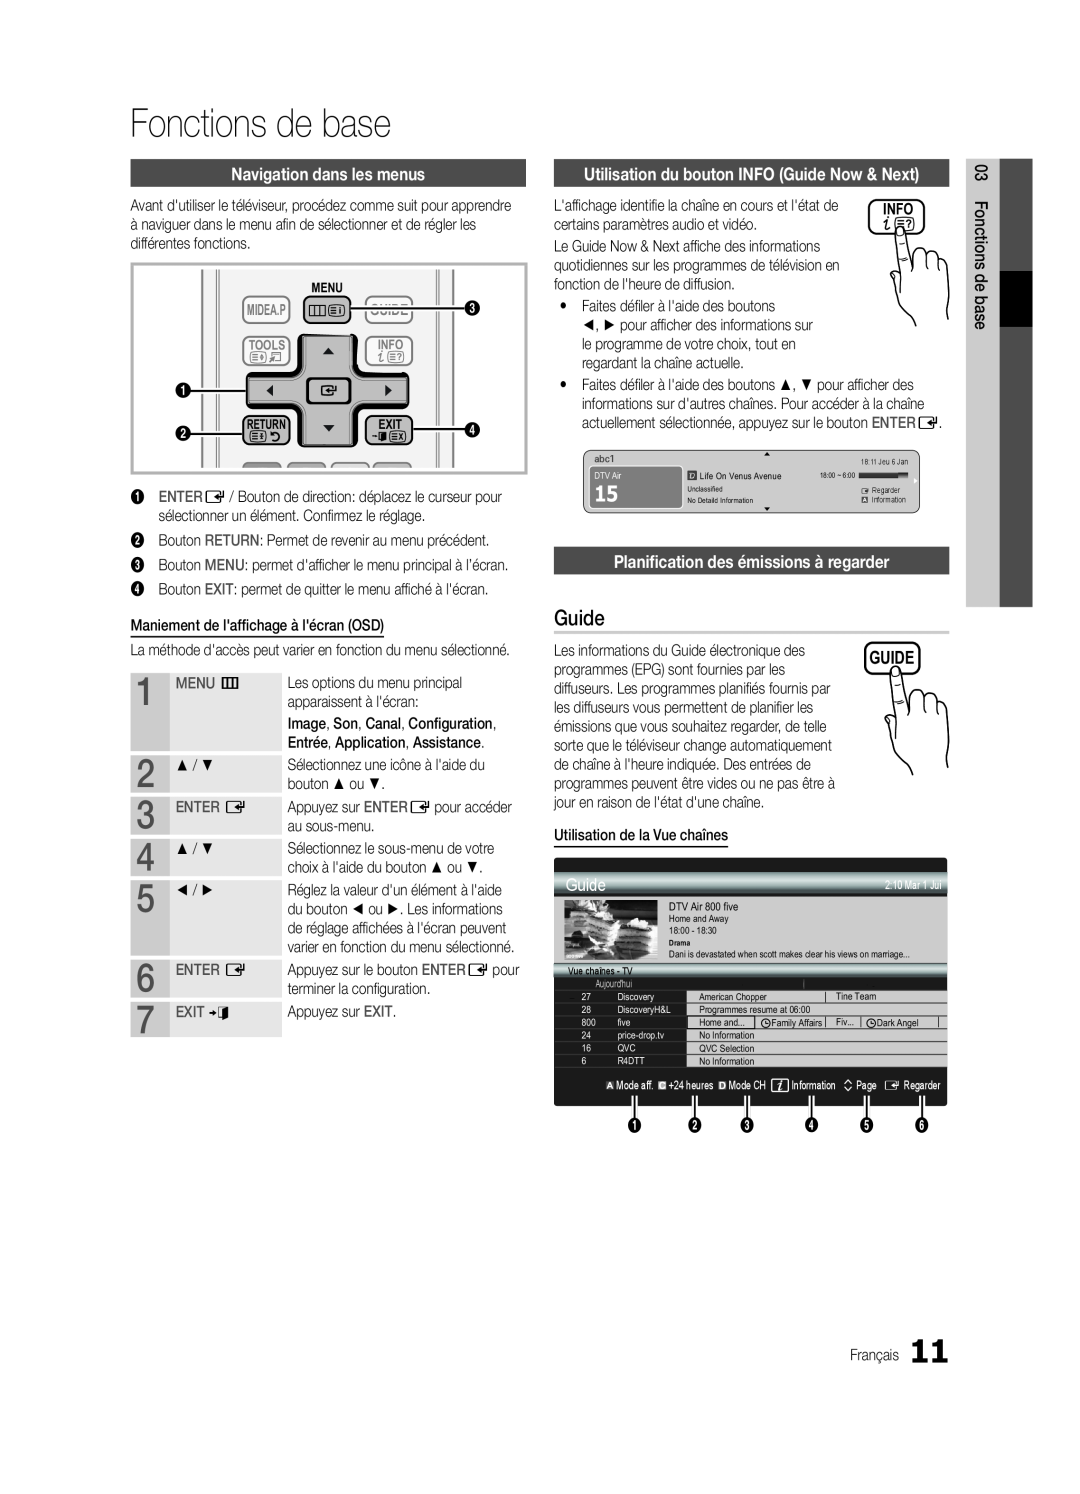 Samsung UE37C5700QSXZG Fonctions de base, Navigation dans les menus, Utilisation du bouton INFO Guide Now & Next, MENU m 